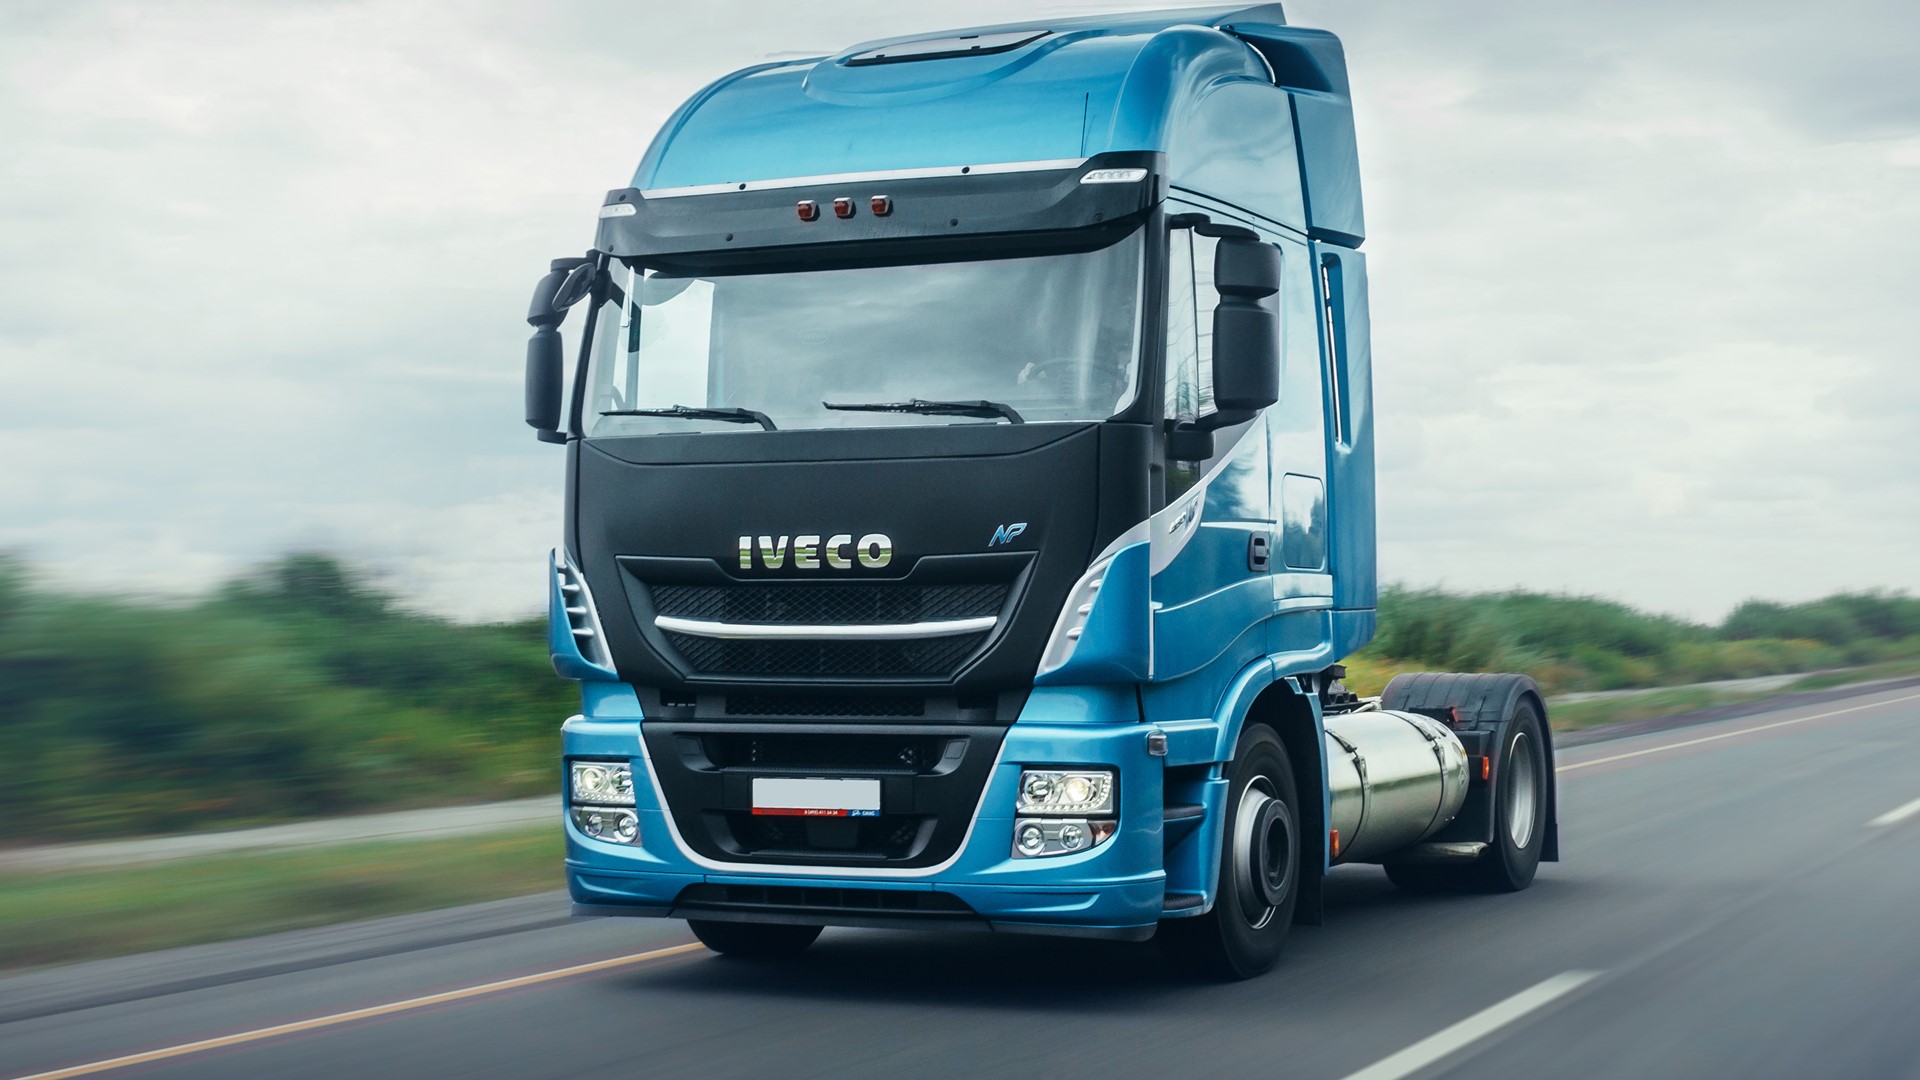 Компания IVECO представляет работающий на метане тягач IVECO Stralis в рамках юбилейного Х Петербургского международного газового форума 5-8 октября 2021 года